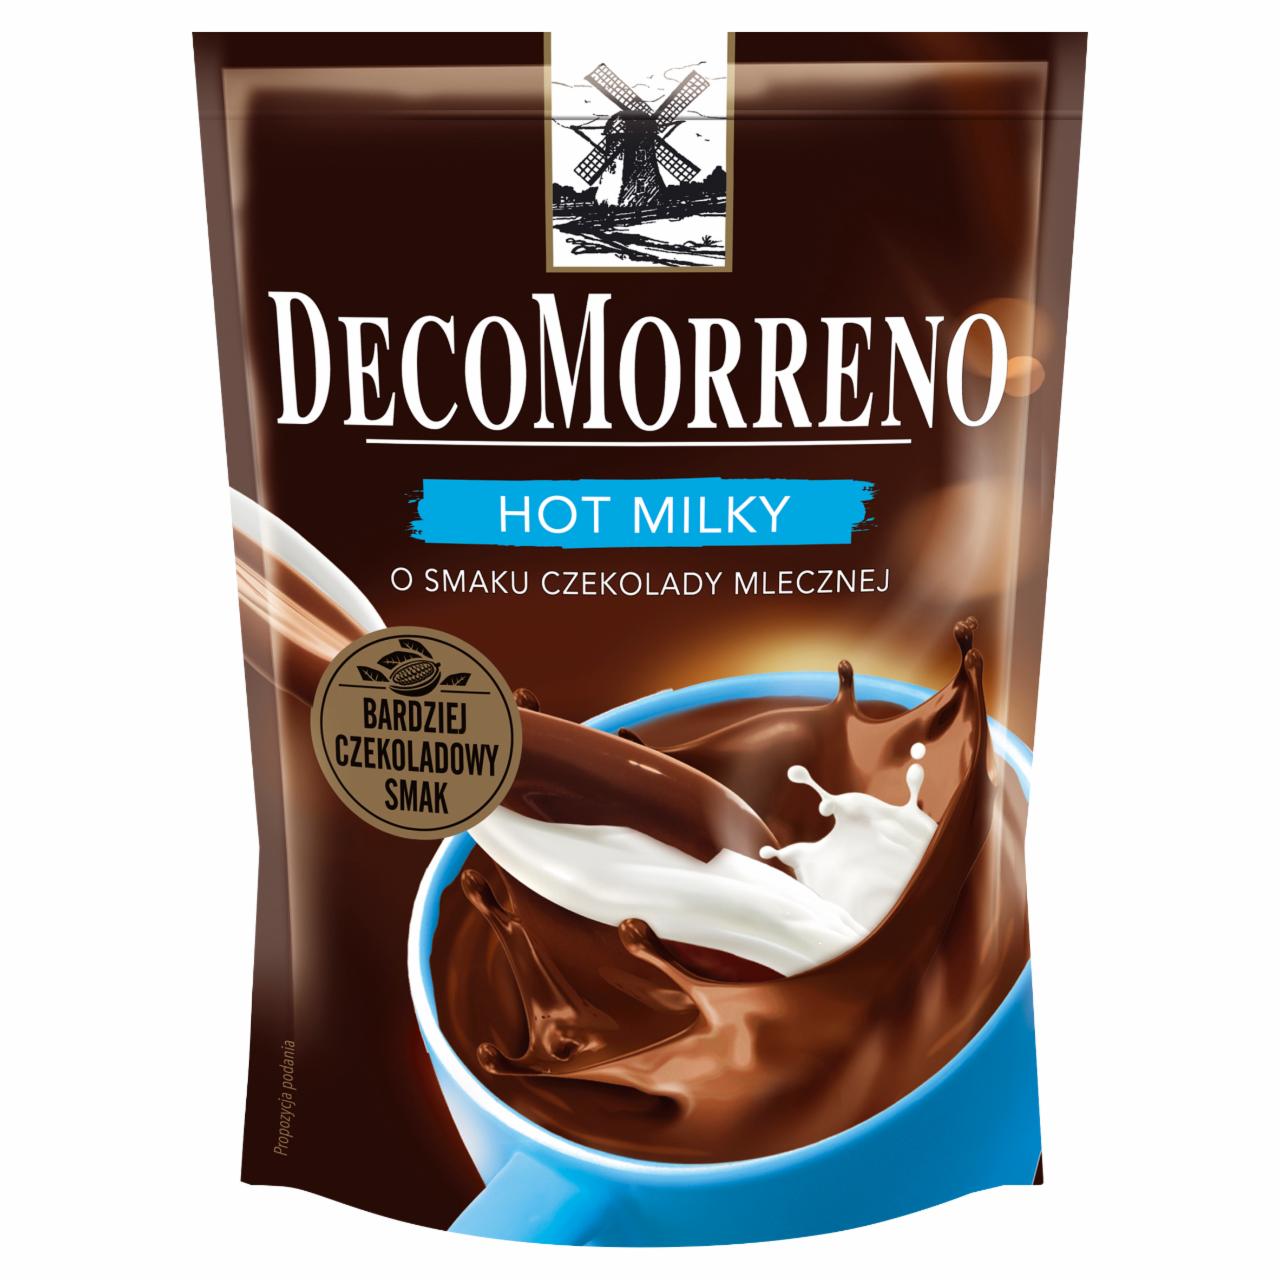 Zdjęcia - DecoMorreno Hot Milky Napój instant o smaku czekolady mlecznej 150 g